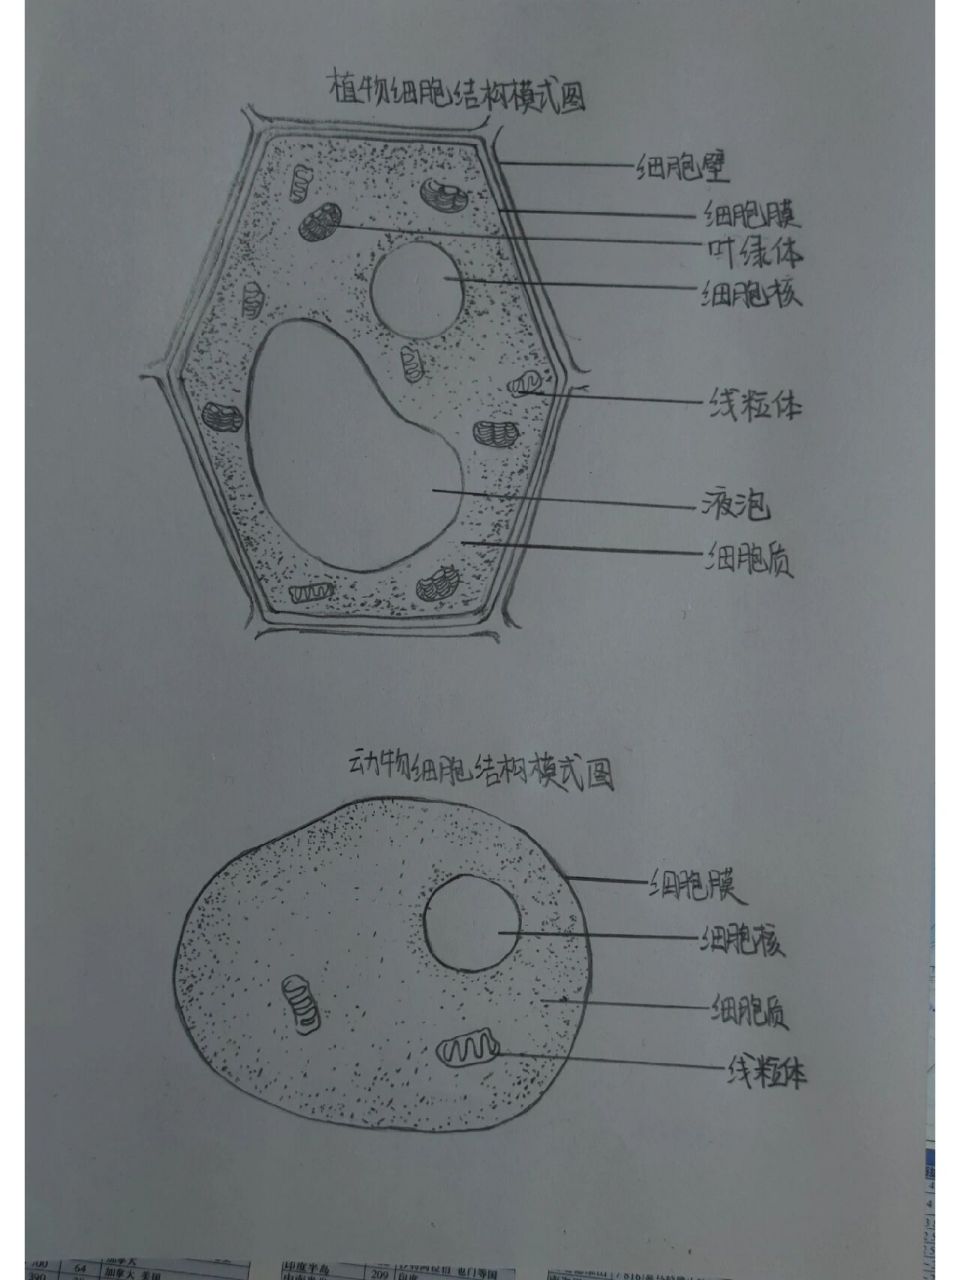 植物细胞结构图 大宝贝的生物作业